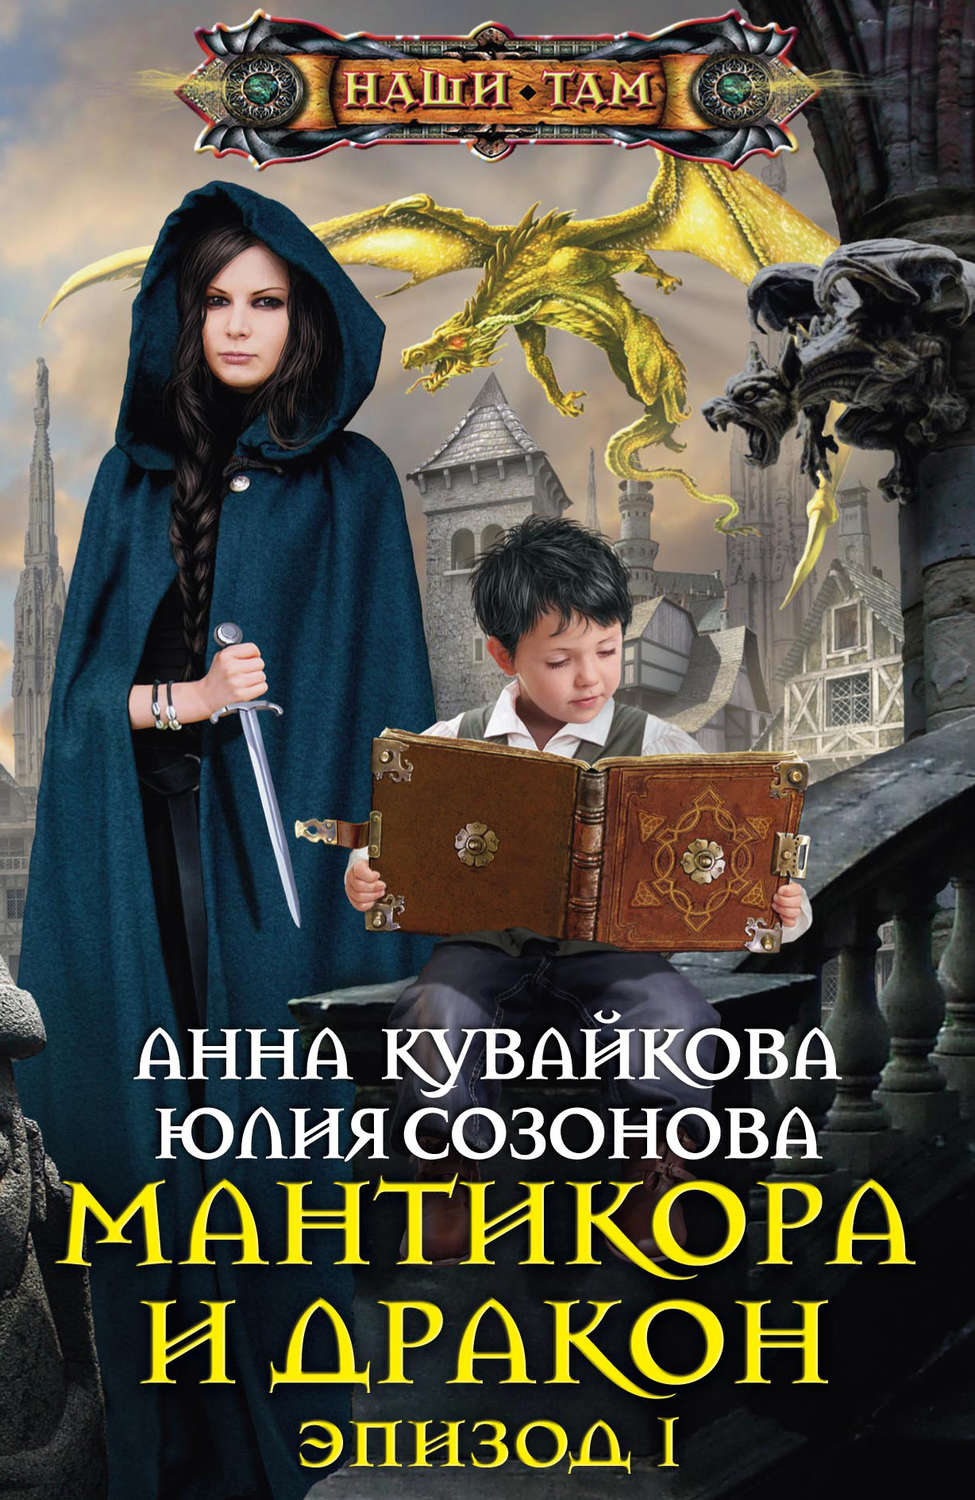 Алексей замковой все книги скачать бесплатно